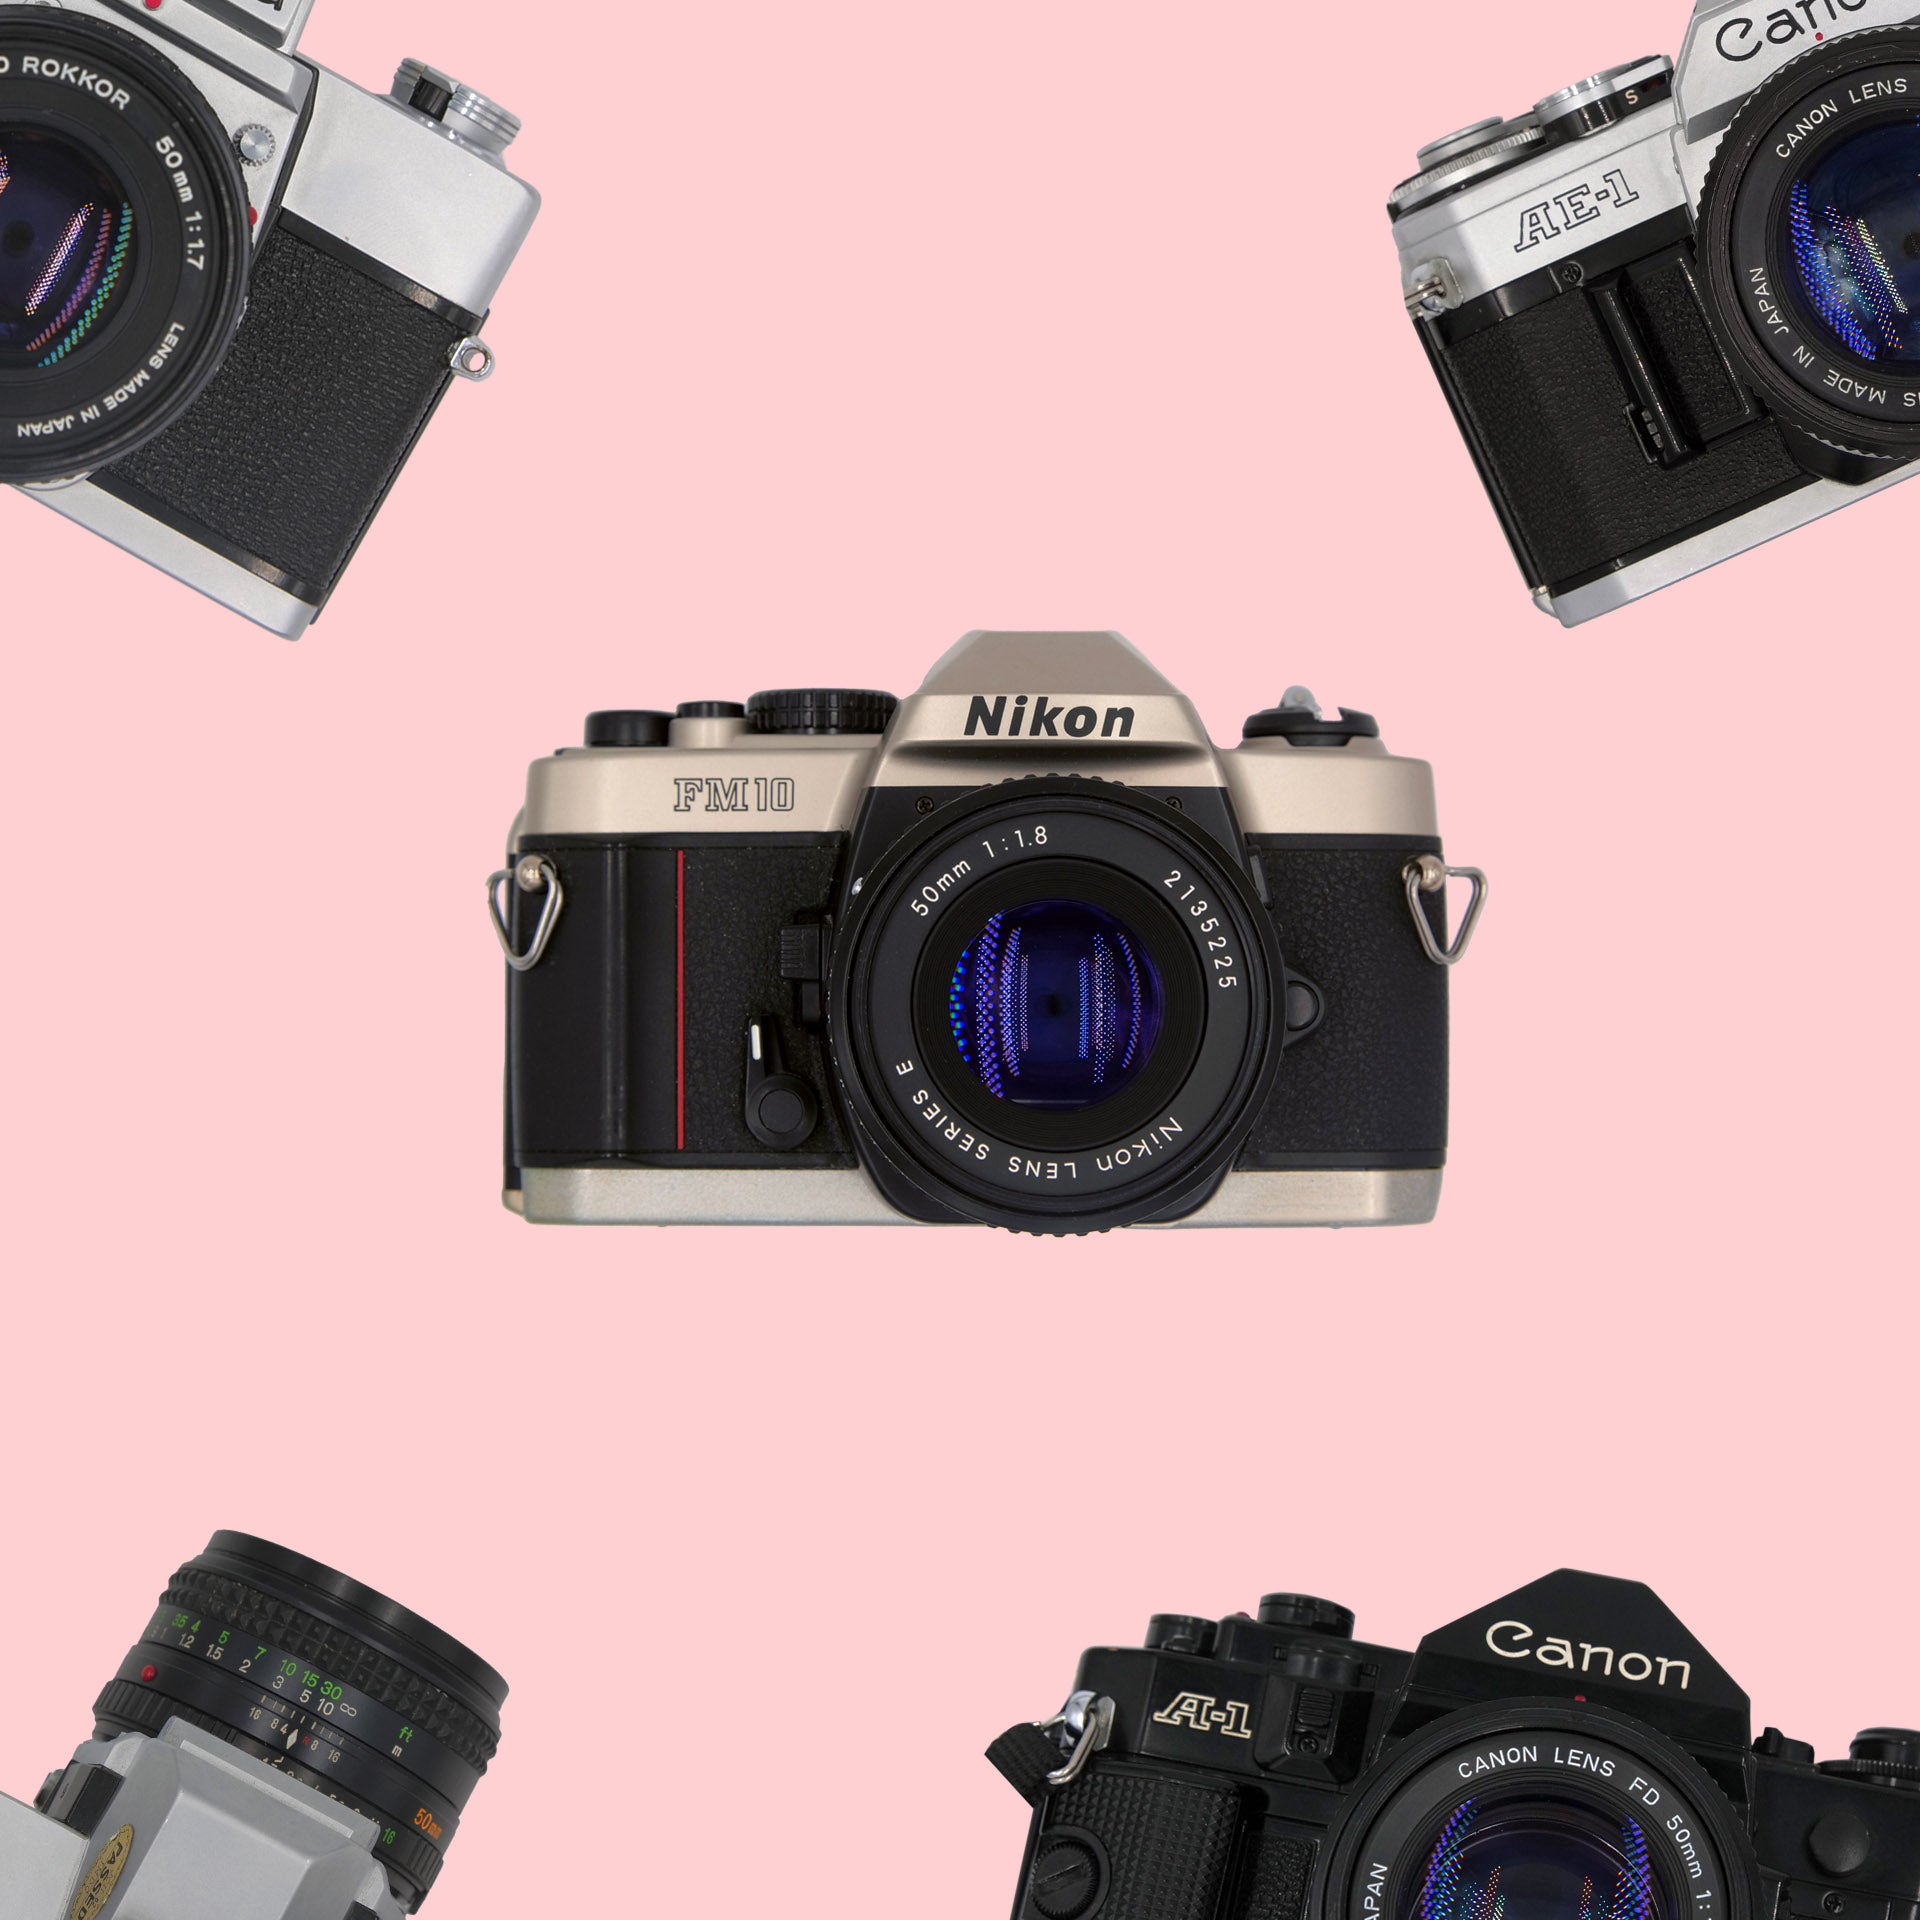 SLR | analog kamera kaufen, vintage kamera, film kamera kaufen, 35mm kamera kaufen, analogkamera shop, analogkamera kaufen